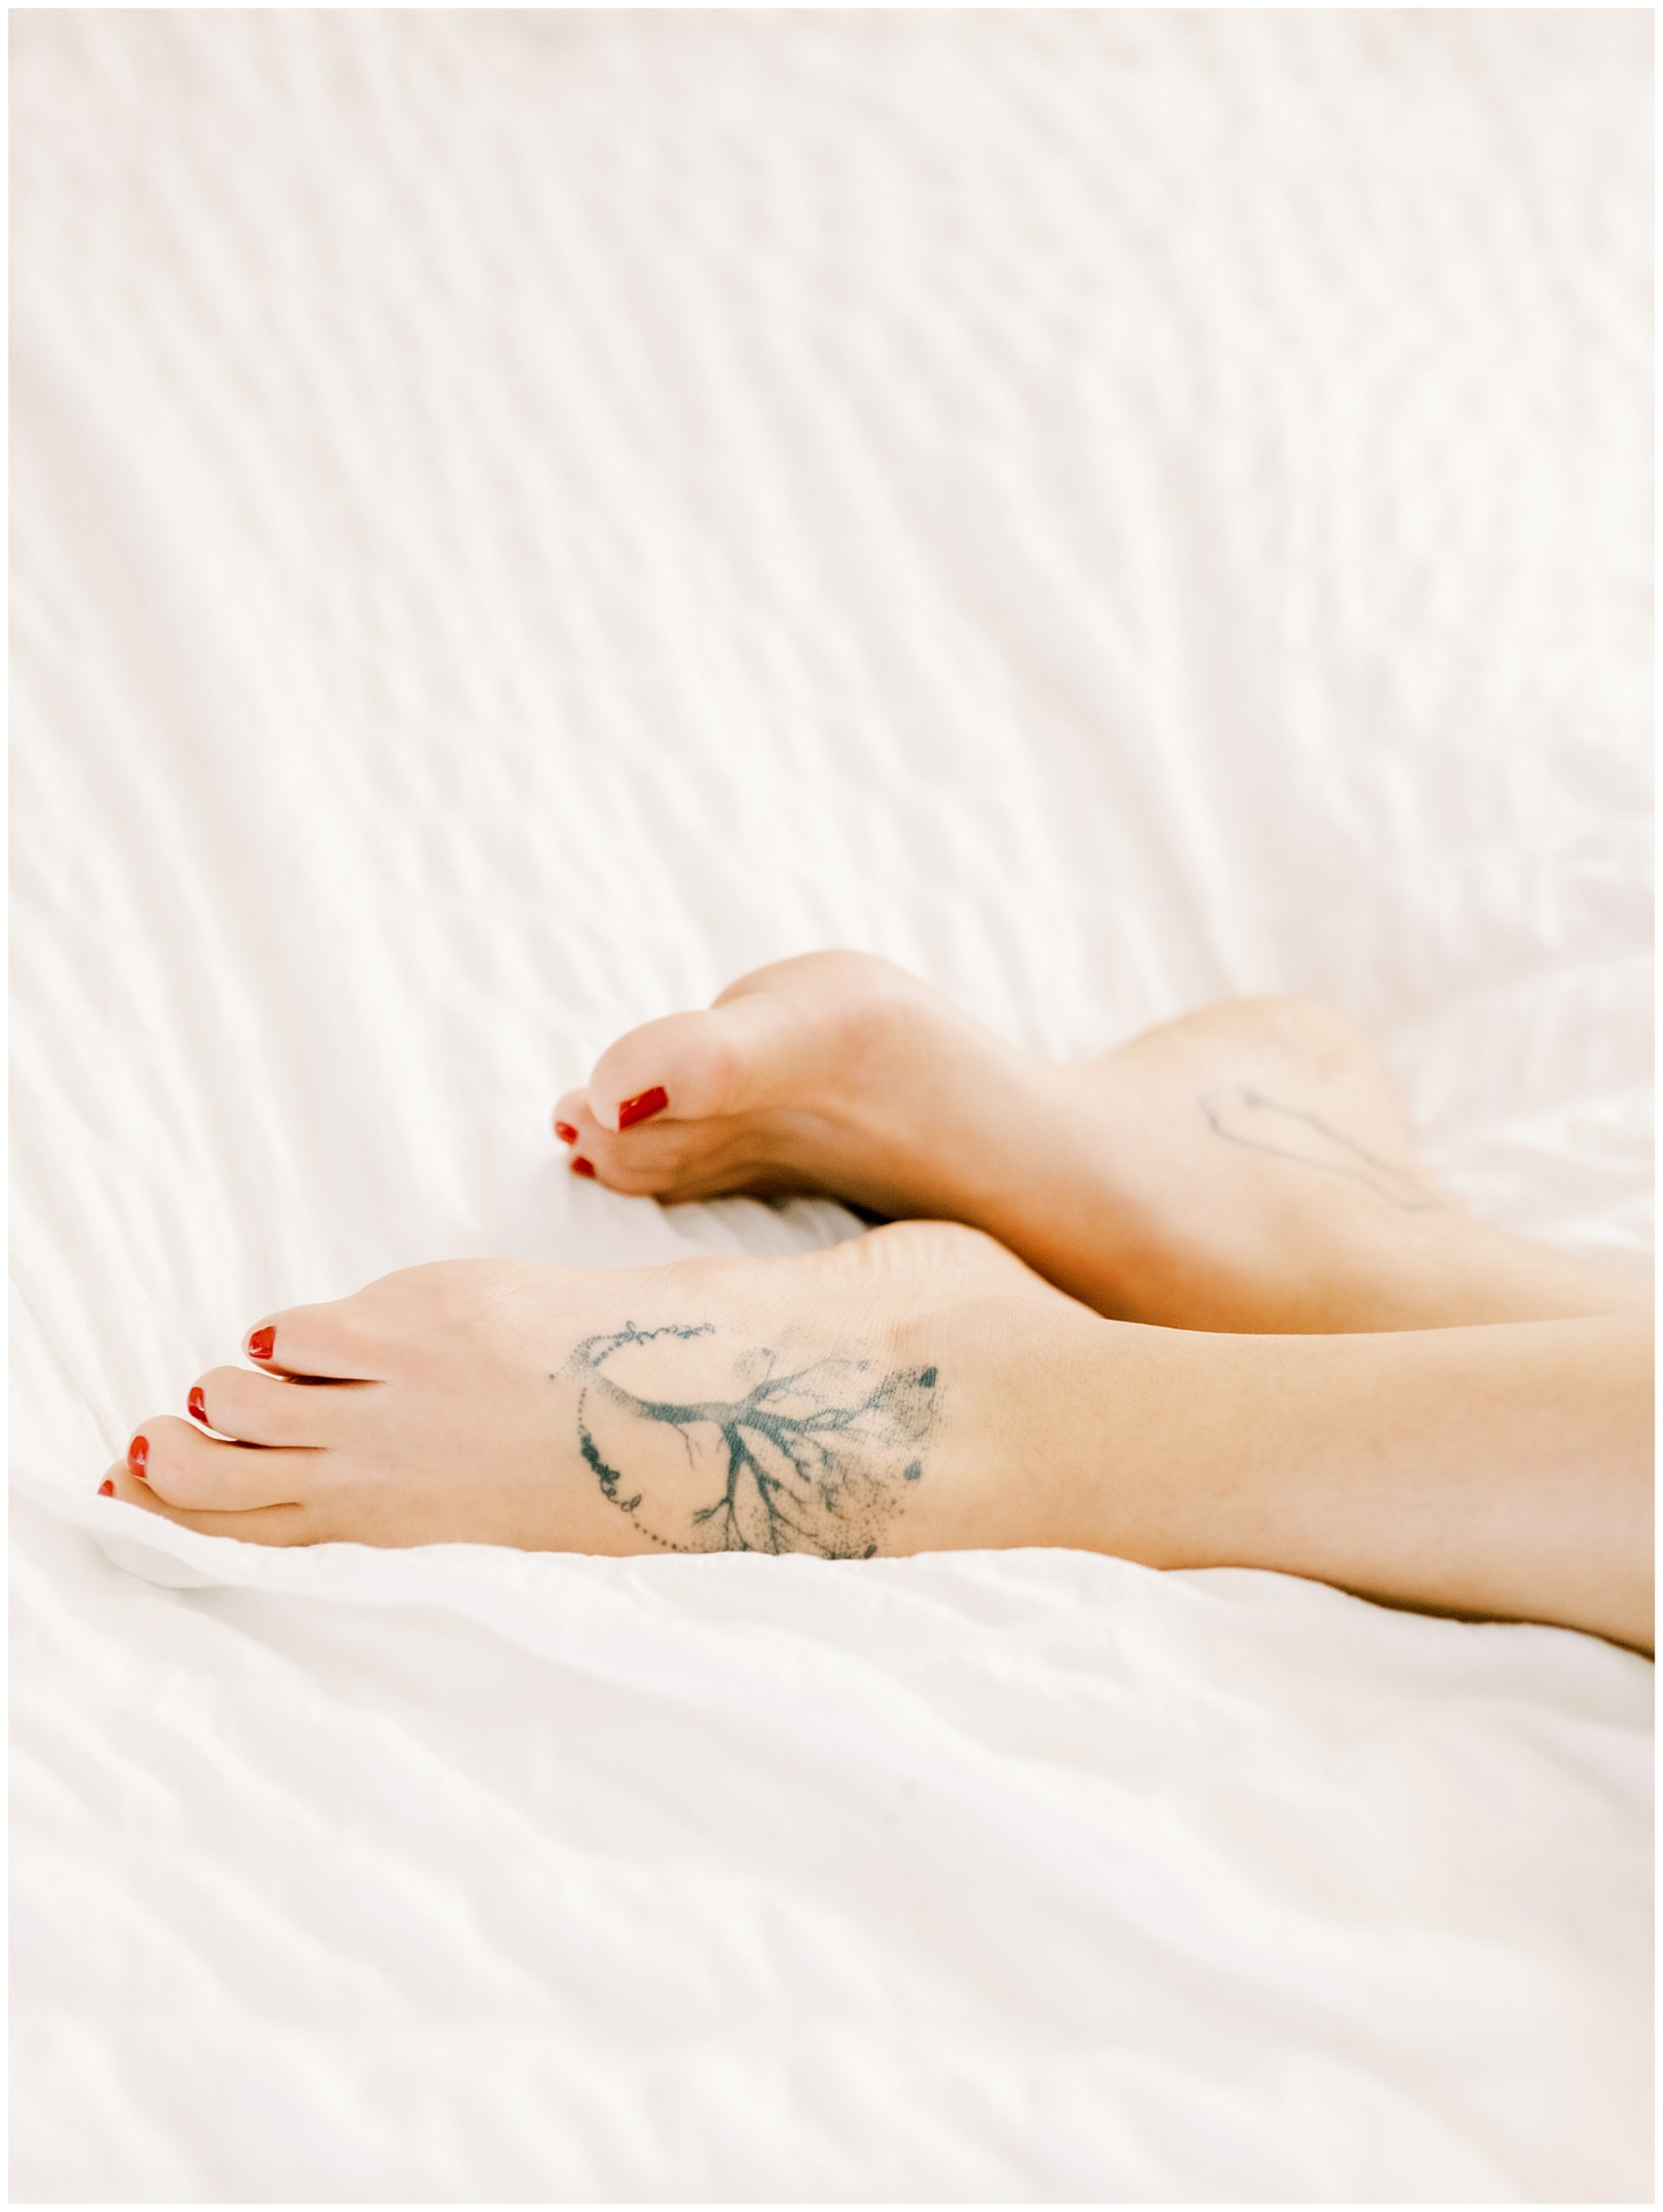 detail feet photo